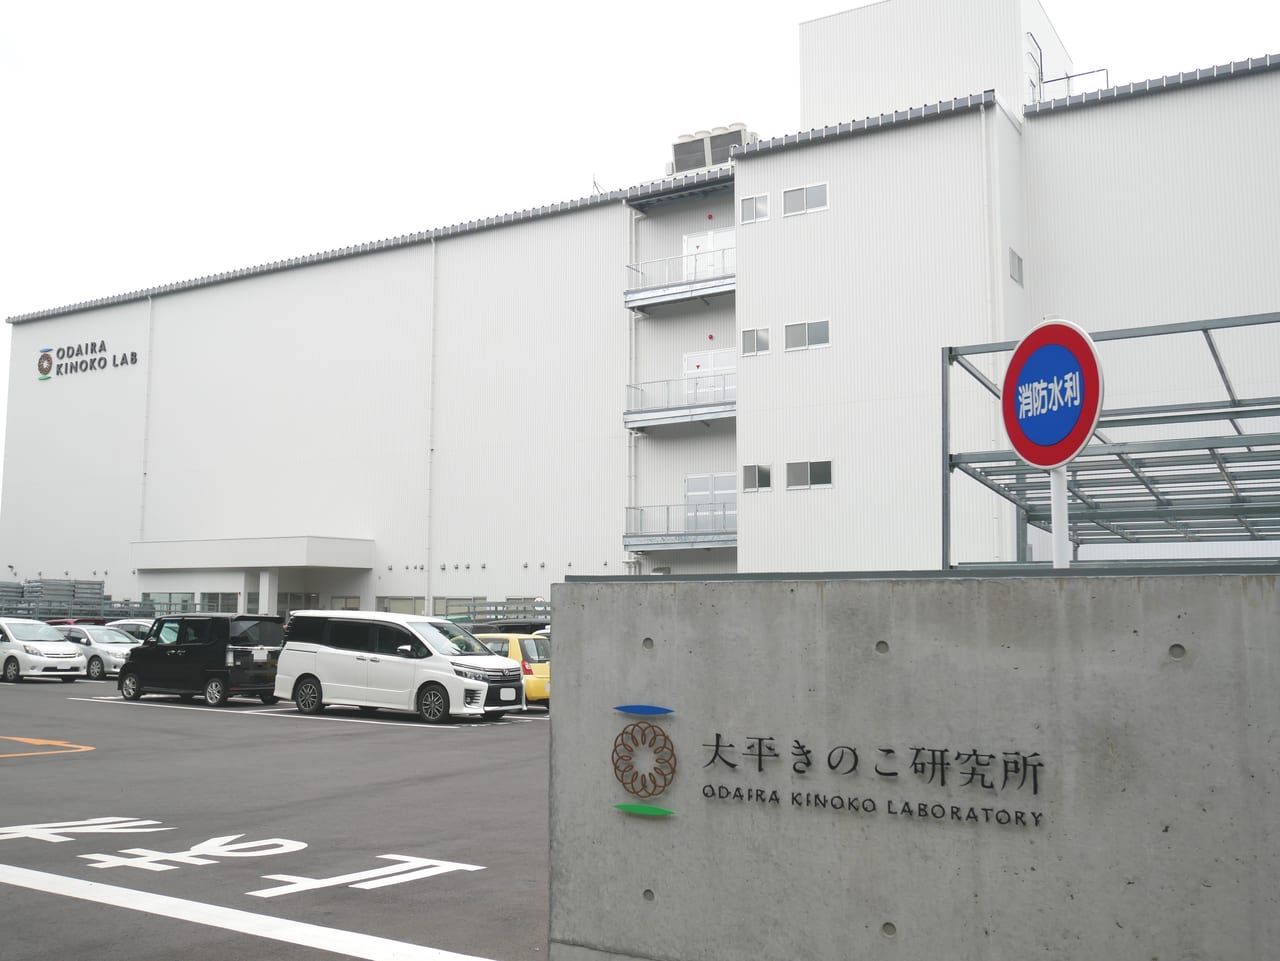 大平きのこ研究所埼玉飯能工場の外観